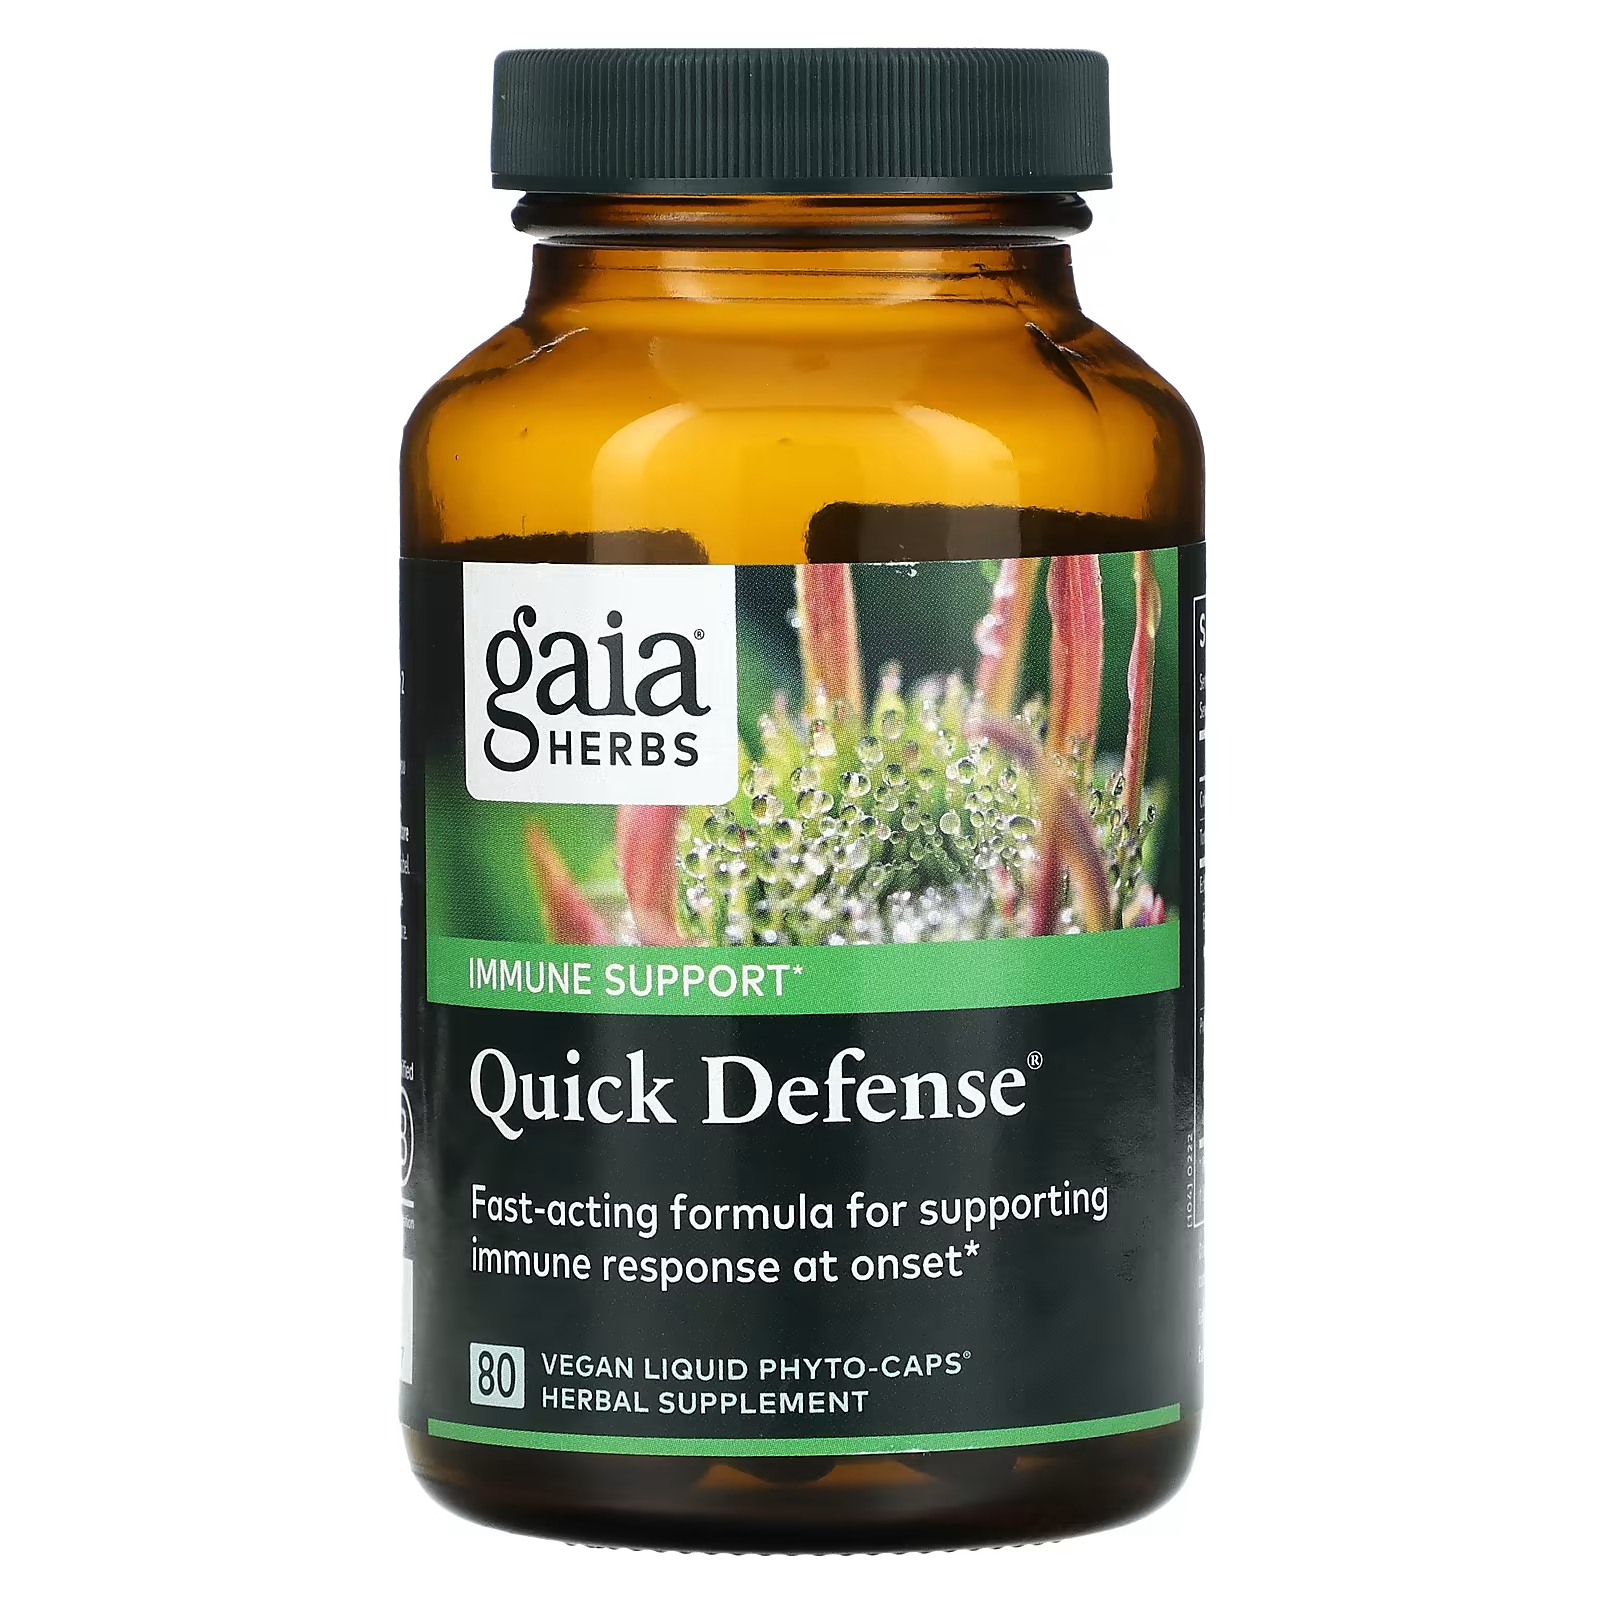 Пищевая добавка Gaia Herbs Quick Defense, 80 веганских жидких фито-капсул пищевая добавка gaia herbs sleepthru 120 веганских жидких фито капсул